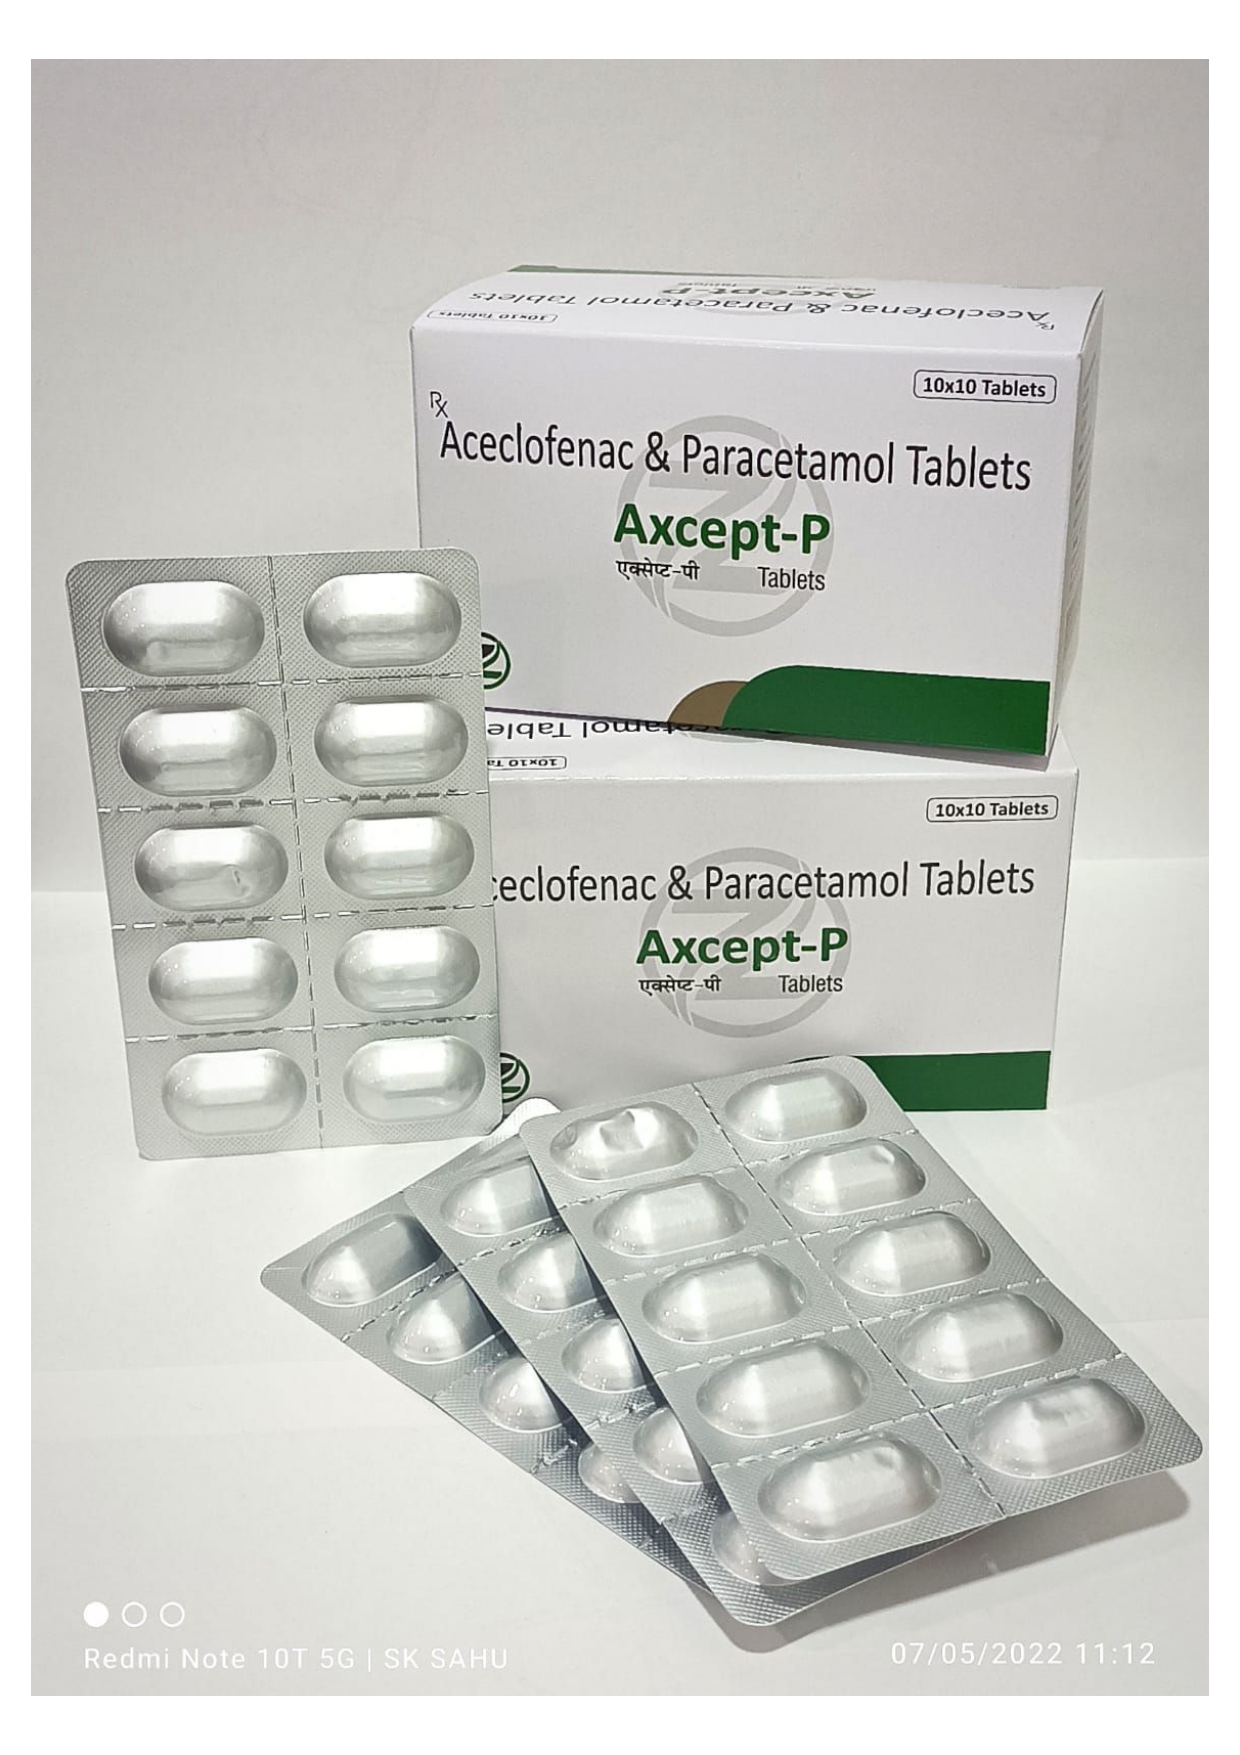 aceclofenac 100mg + paracetamol 325mg